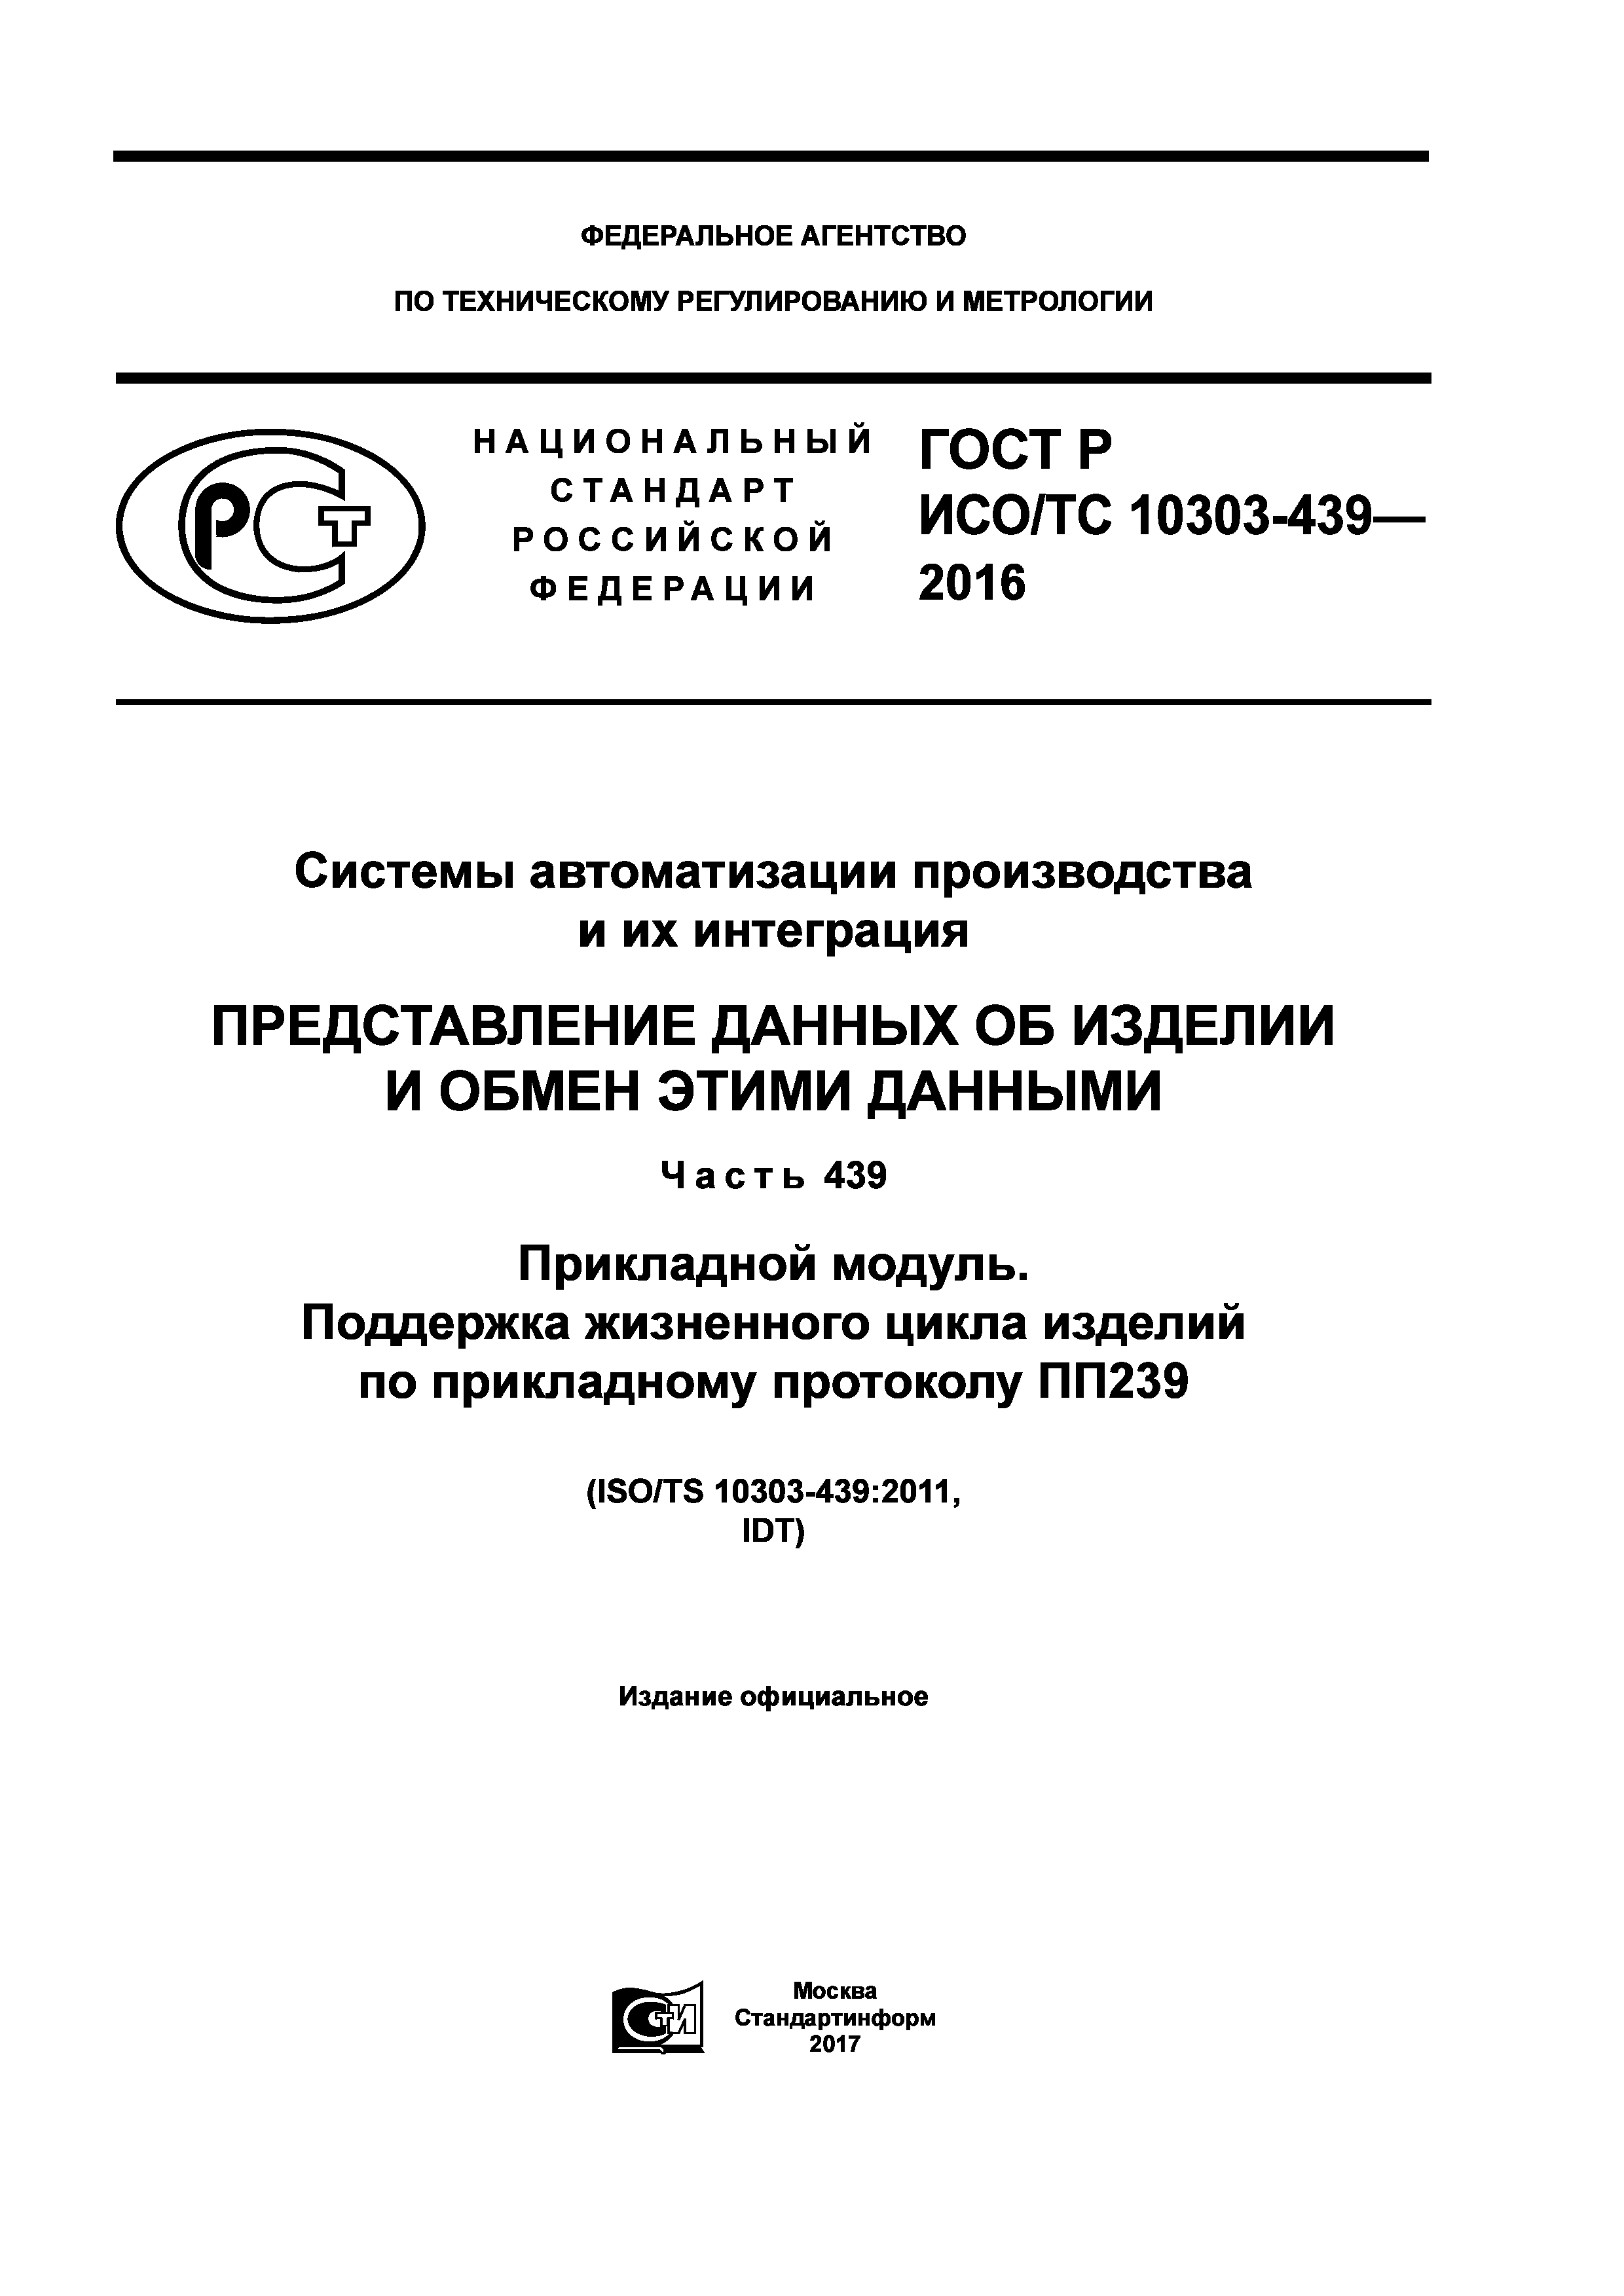 ГОСТ Р ИСО/ТС 10303-439-2016